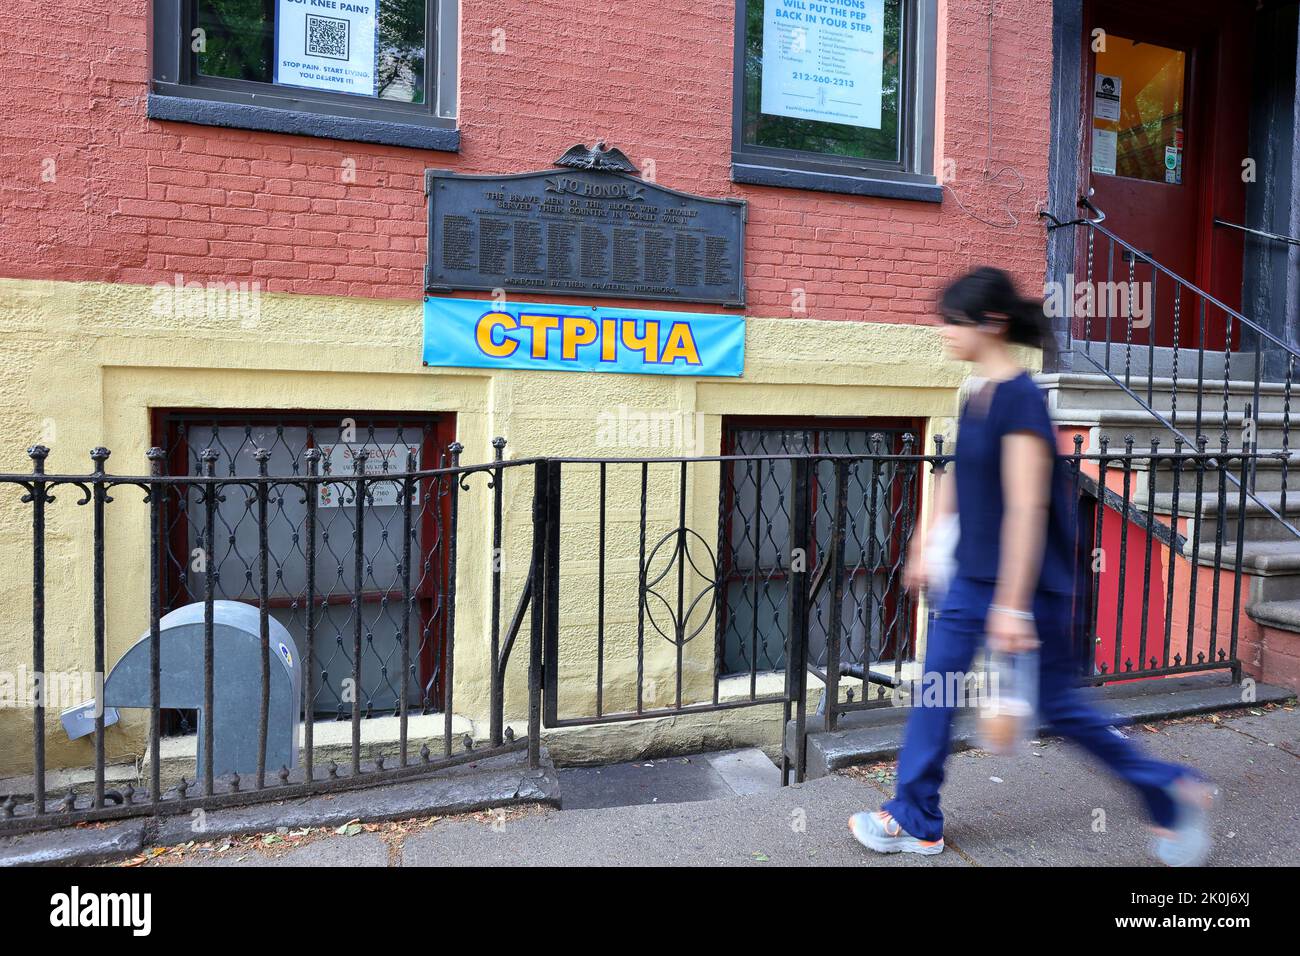 Streecha стріча, 33 e 7th St, New York, NYC foto di un ristorante ucraino nel quartiere East Village di Manhattan. Foto Stock